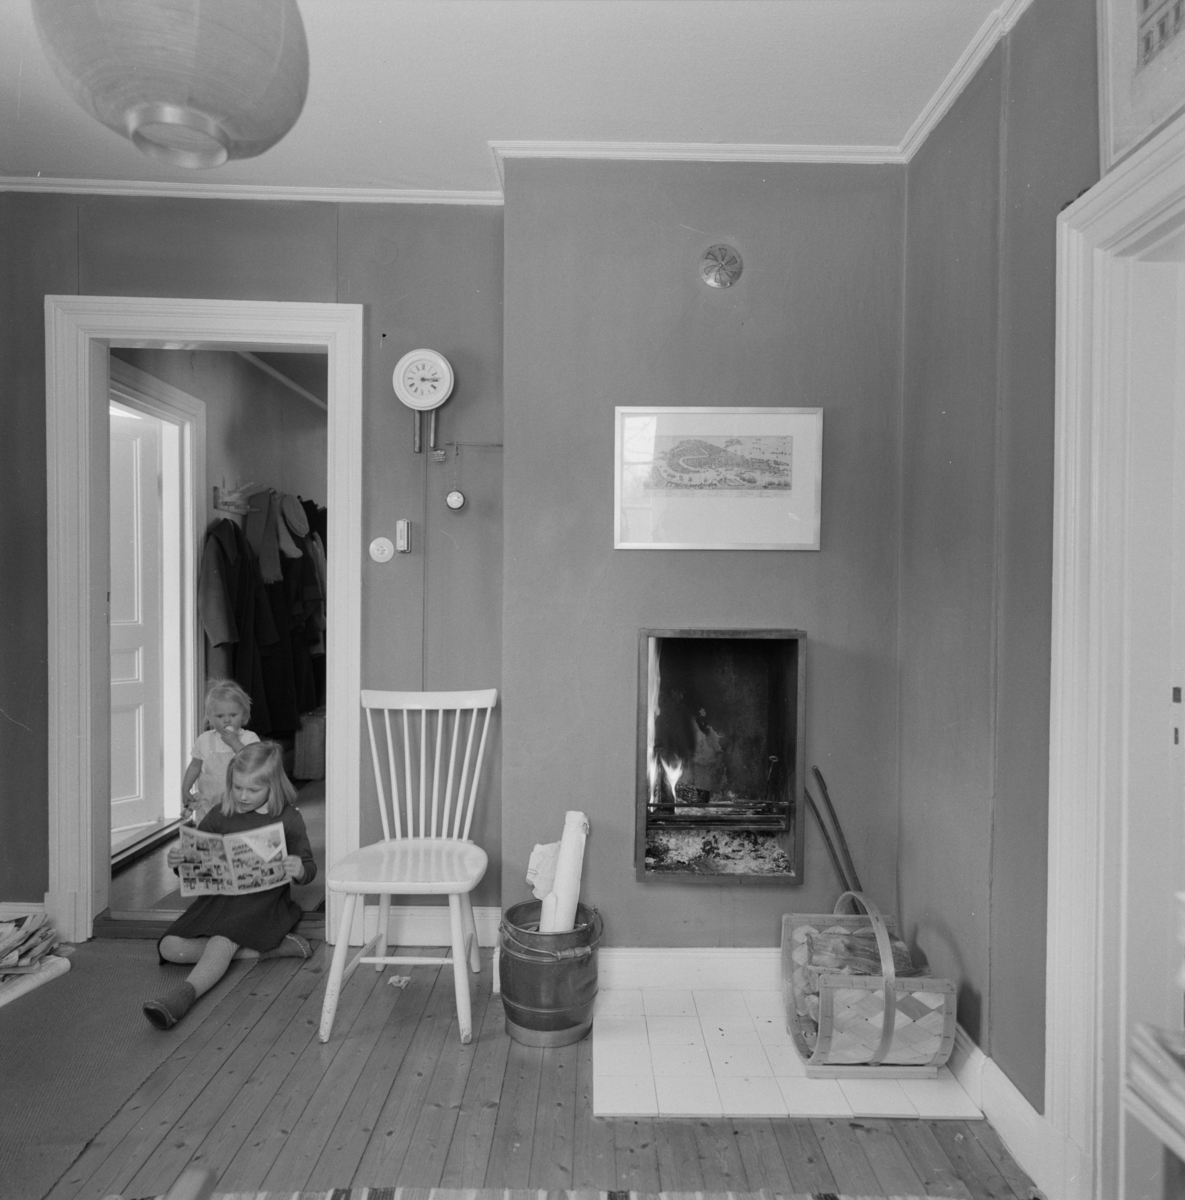 villa Ahlgren
Interiör av rum med braskamin, i dörrhålet läsande flicka